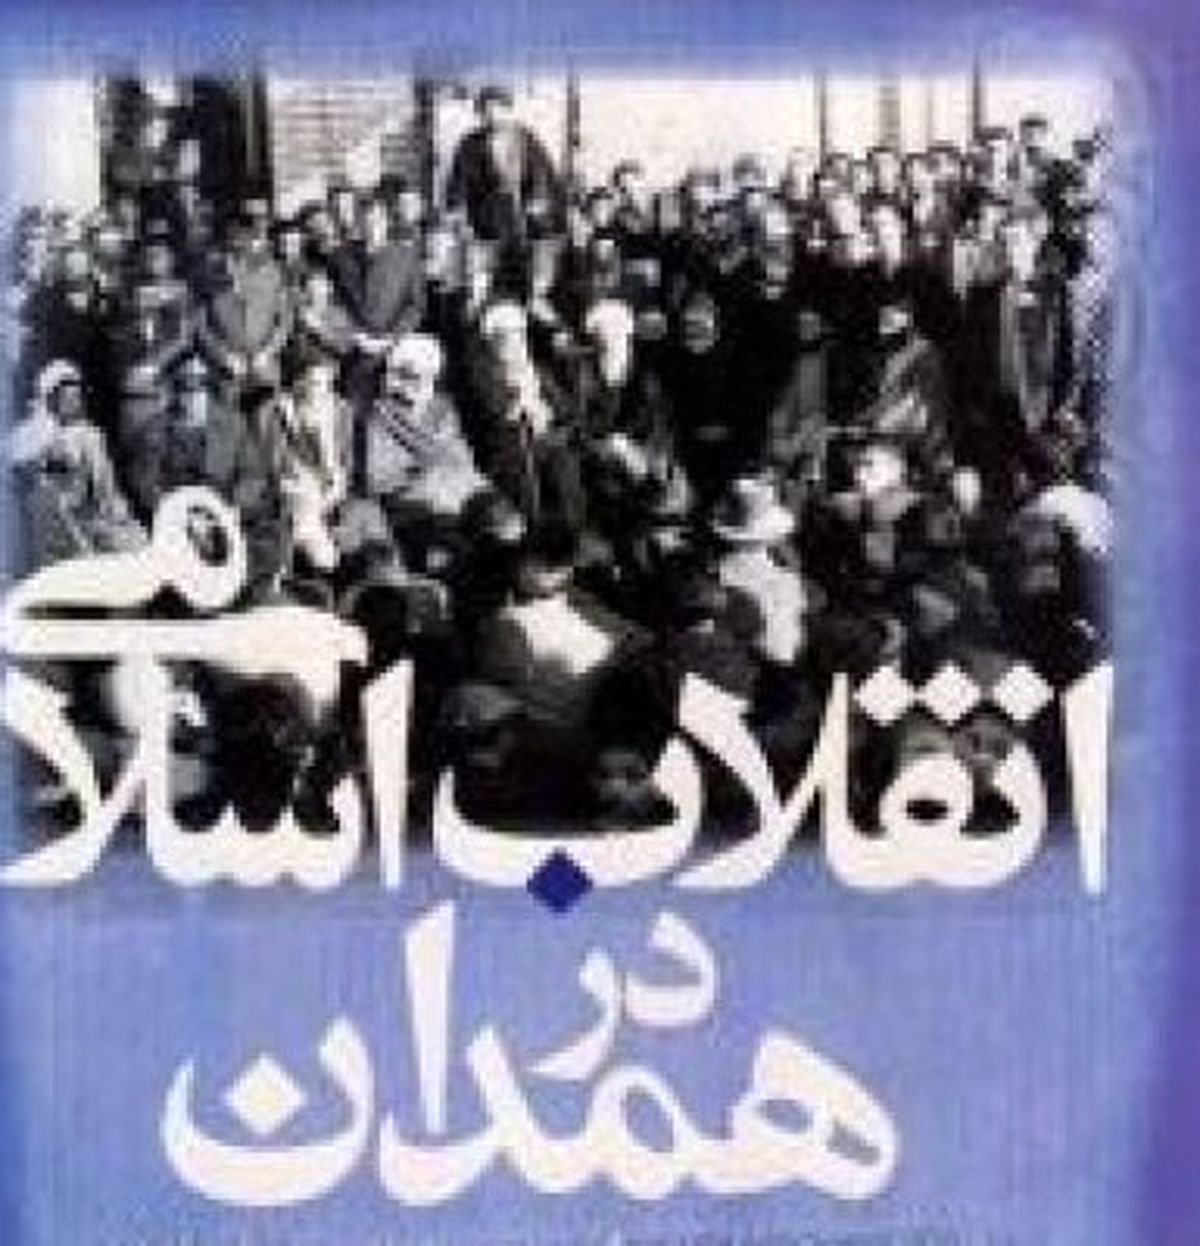 انقلاب اسلامی در همدان/نقش مردم همدان در مقابله با نظامیان رژیم پهلوی